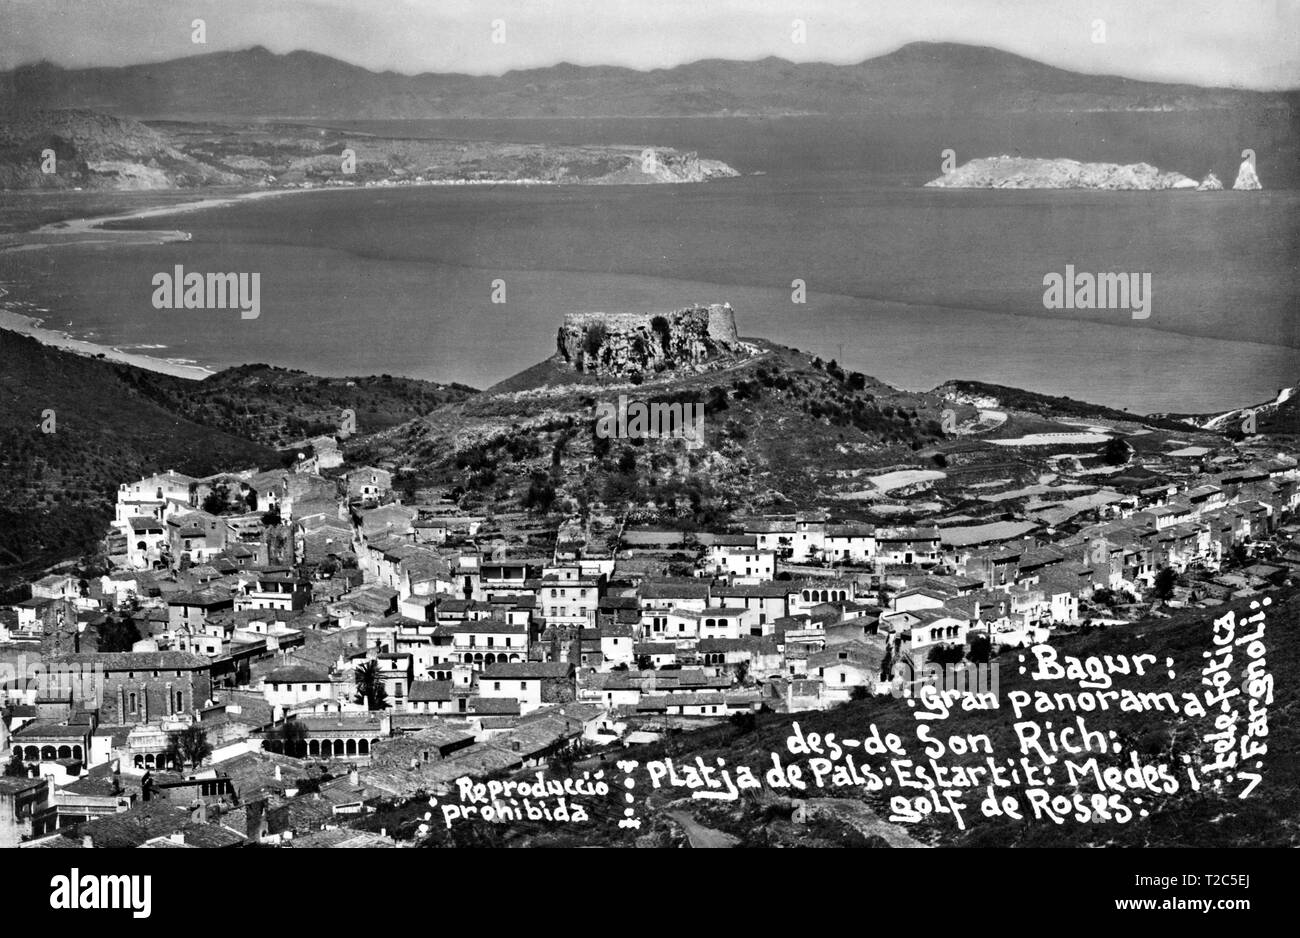 Tarjeta postal, gran panorama de Bagur, Playa de Pals, islas Medas, y golfo de Rosas (Girona). Fotografía de Valentí Fargnoli Yannetta (1885-1944). Año 1926. Foto Stock